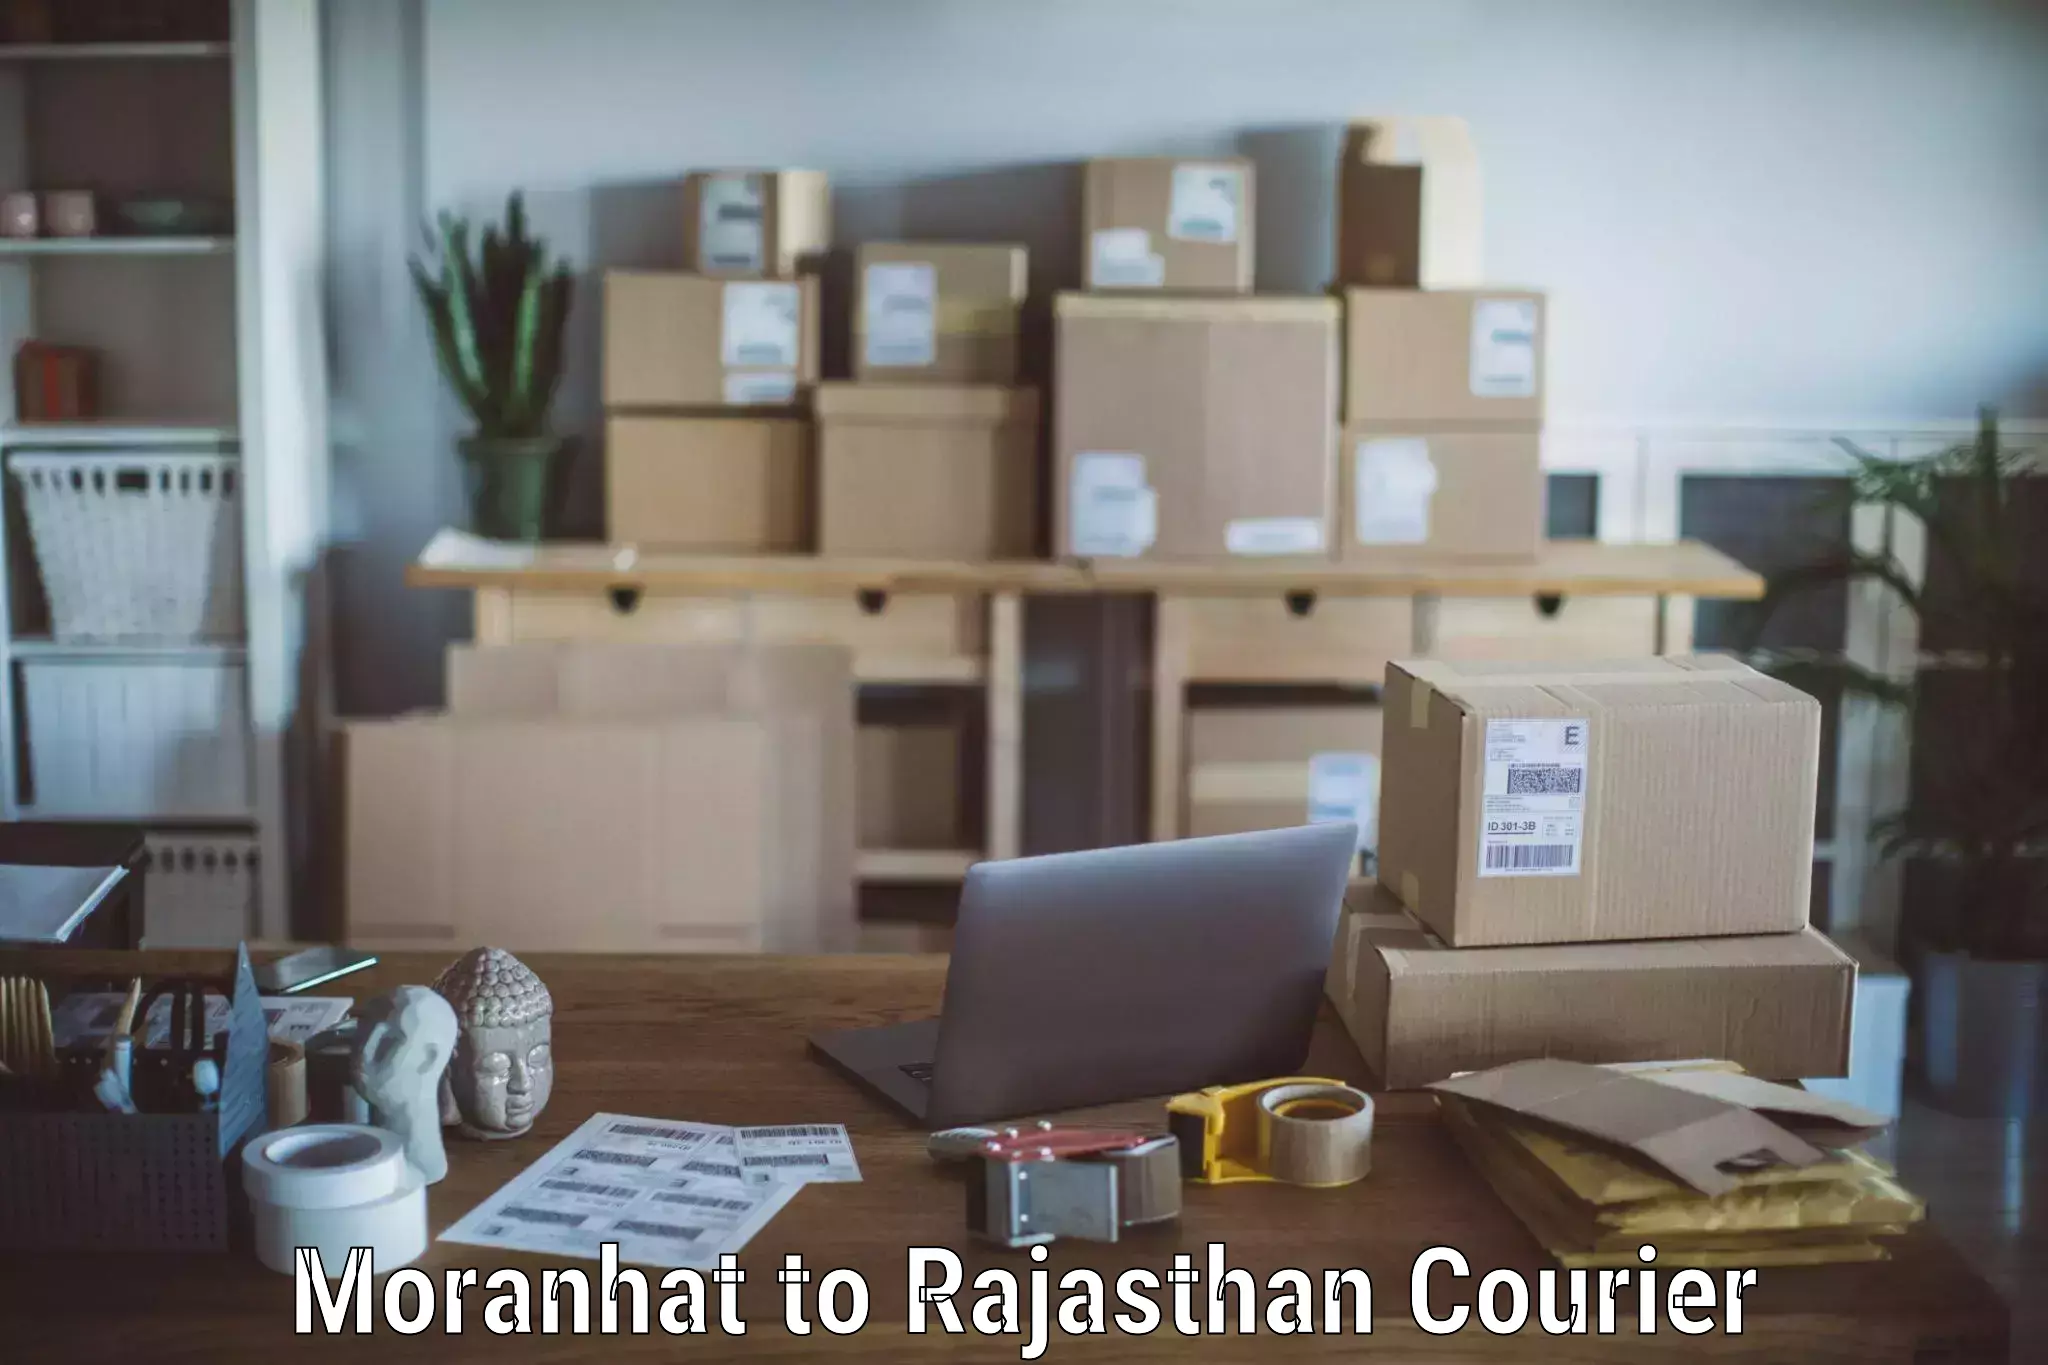 Furniture moving experts Moranhat to Rajasthan